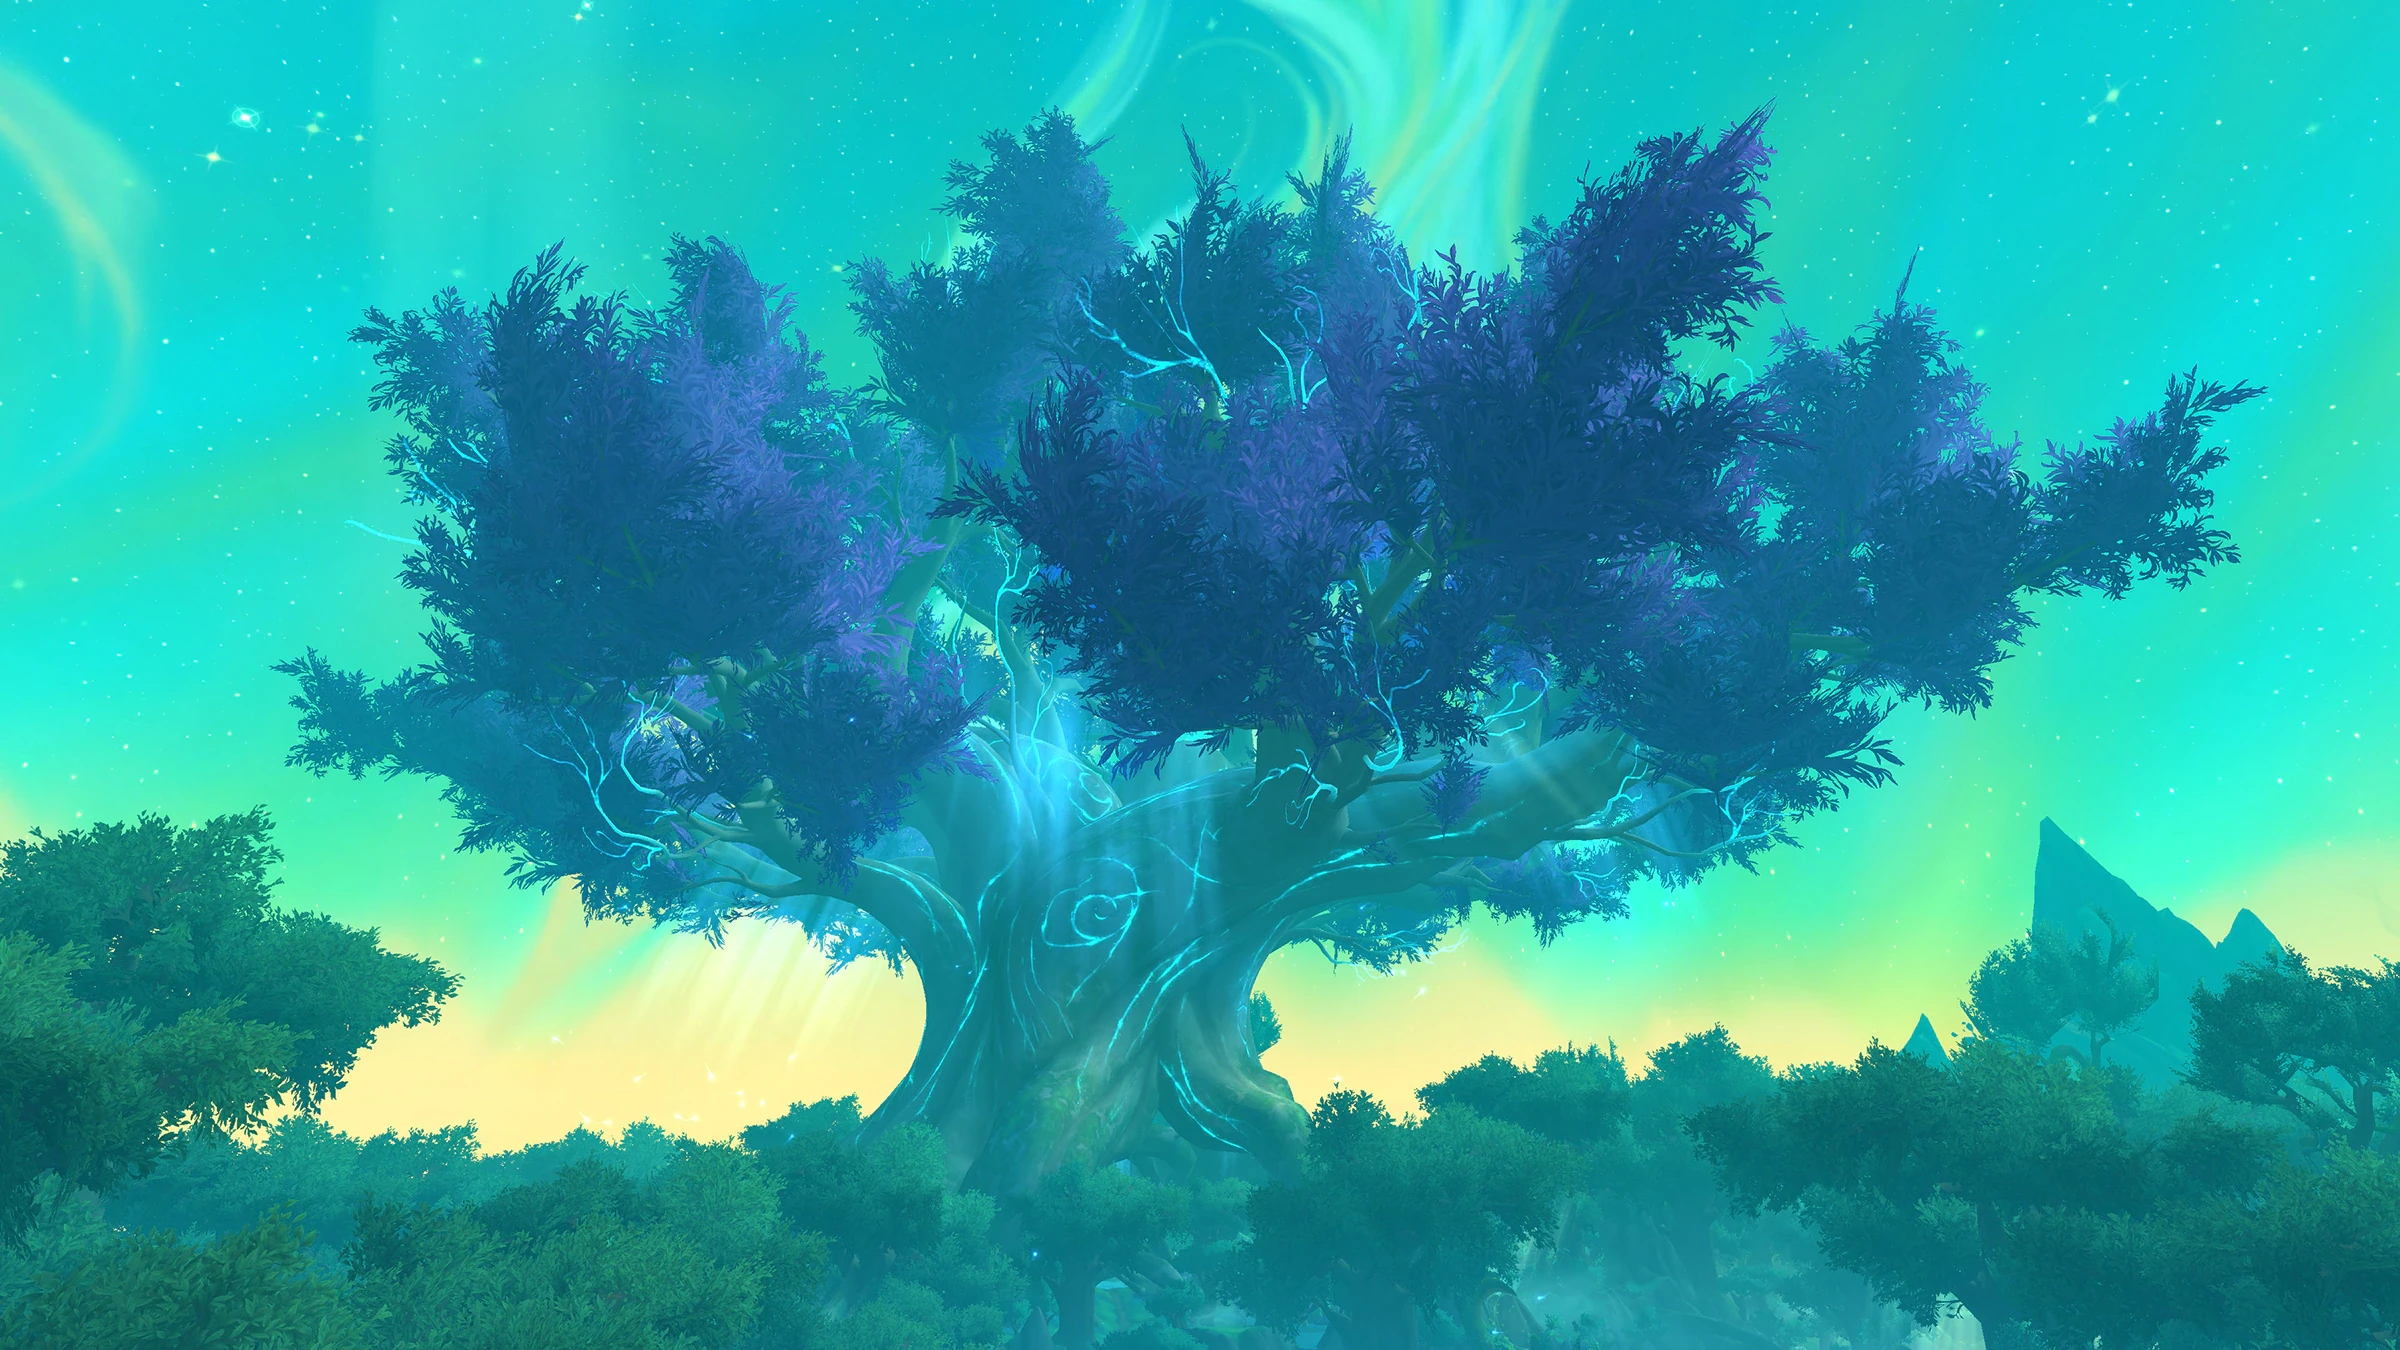 World of Warcraft Dragonflight - Wallpaper Tree 14-11 001